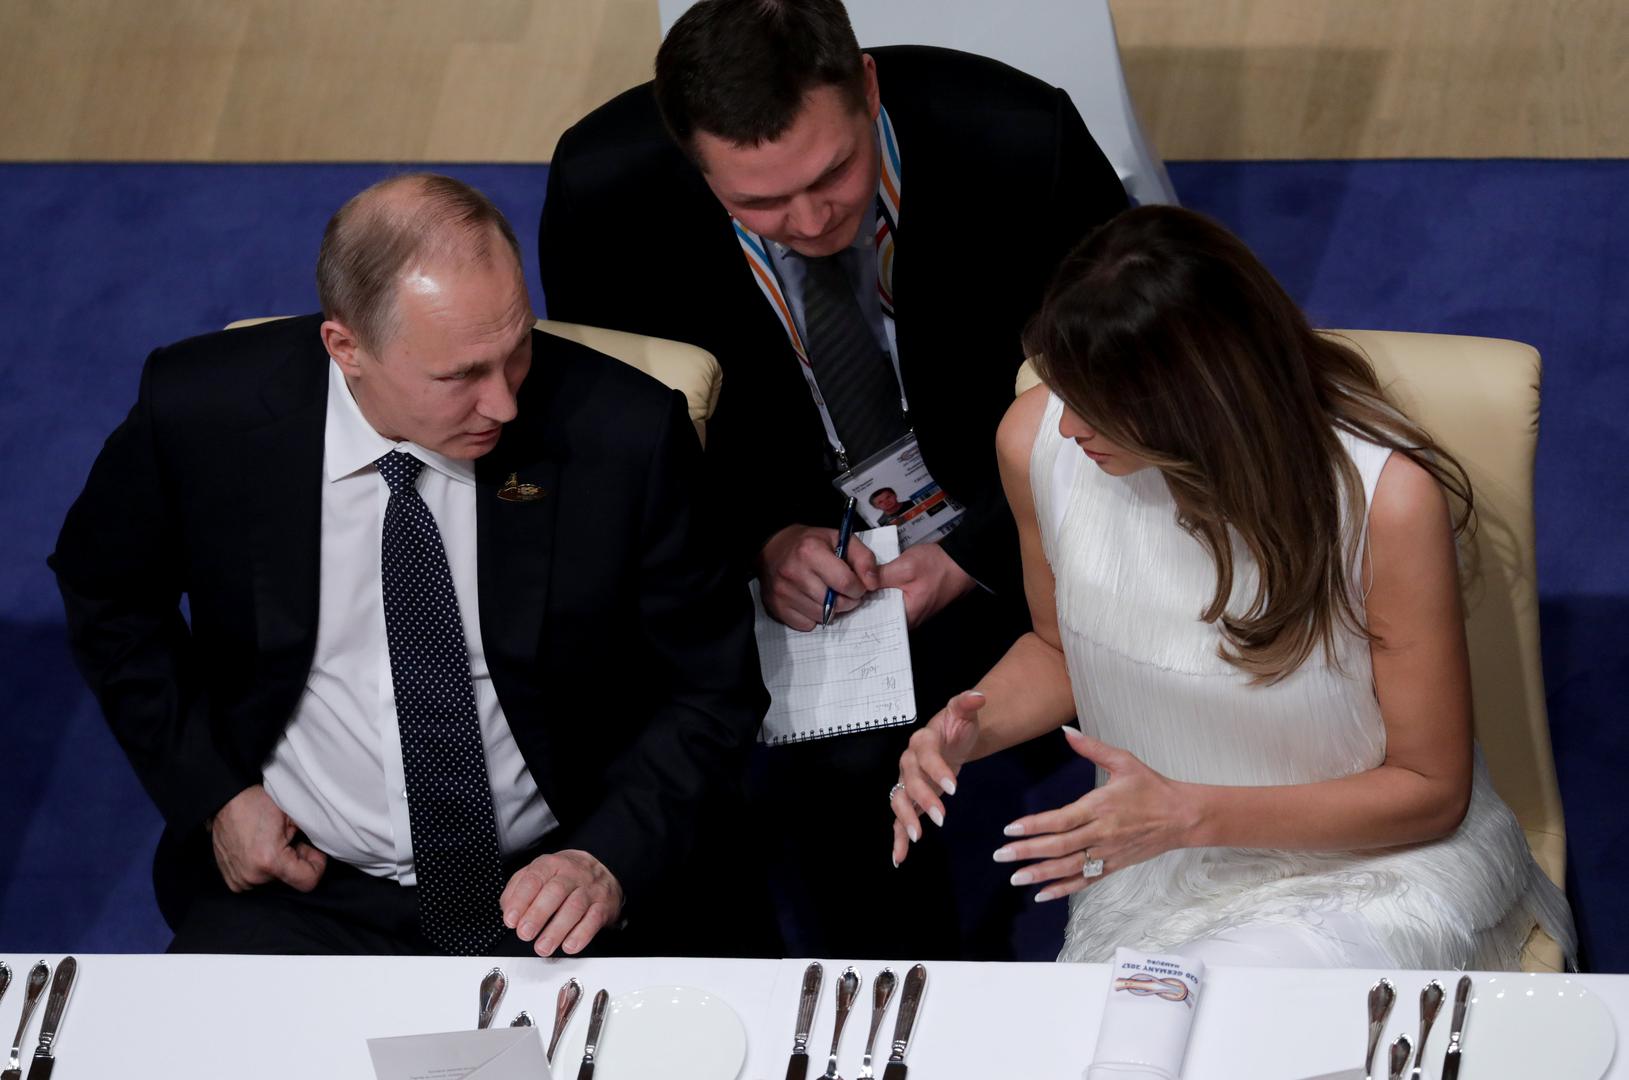 Tijekom večere koja je bila organizirana za lidere na summitu G-20, Melania Trump i Vladimir Putin sjedili su jedno pokraj drugog.